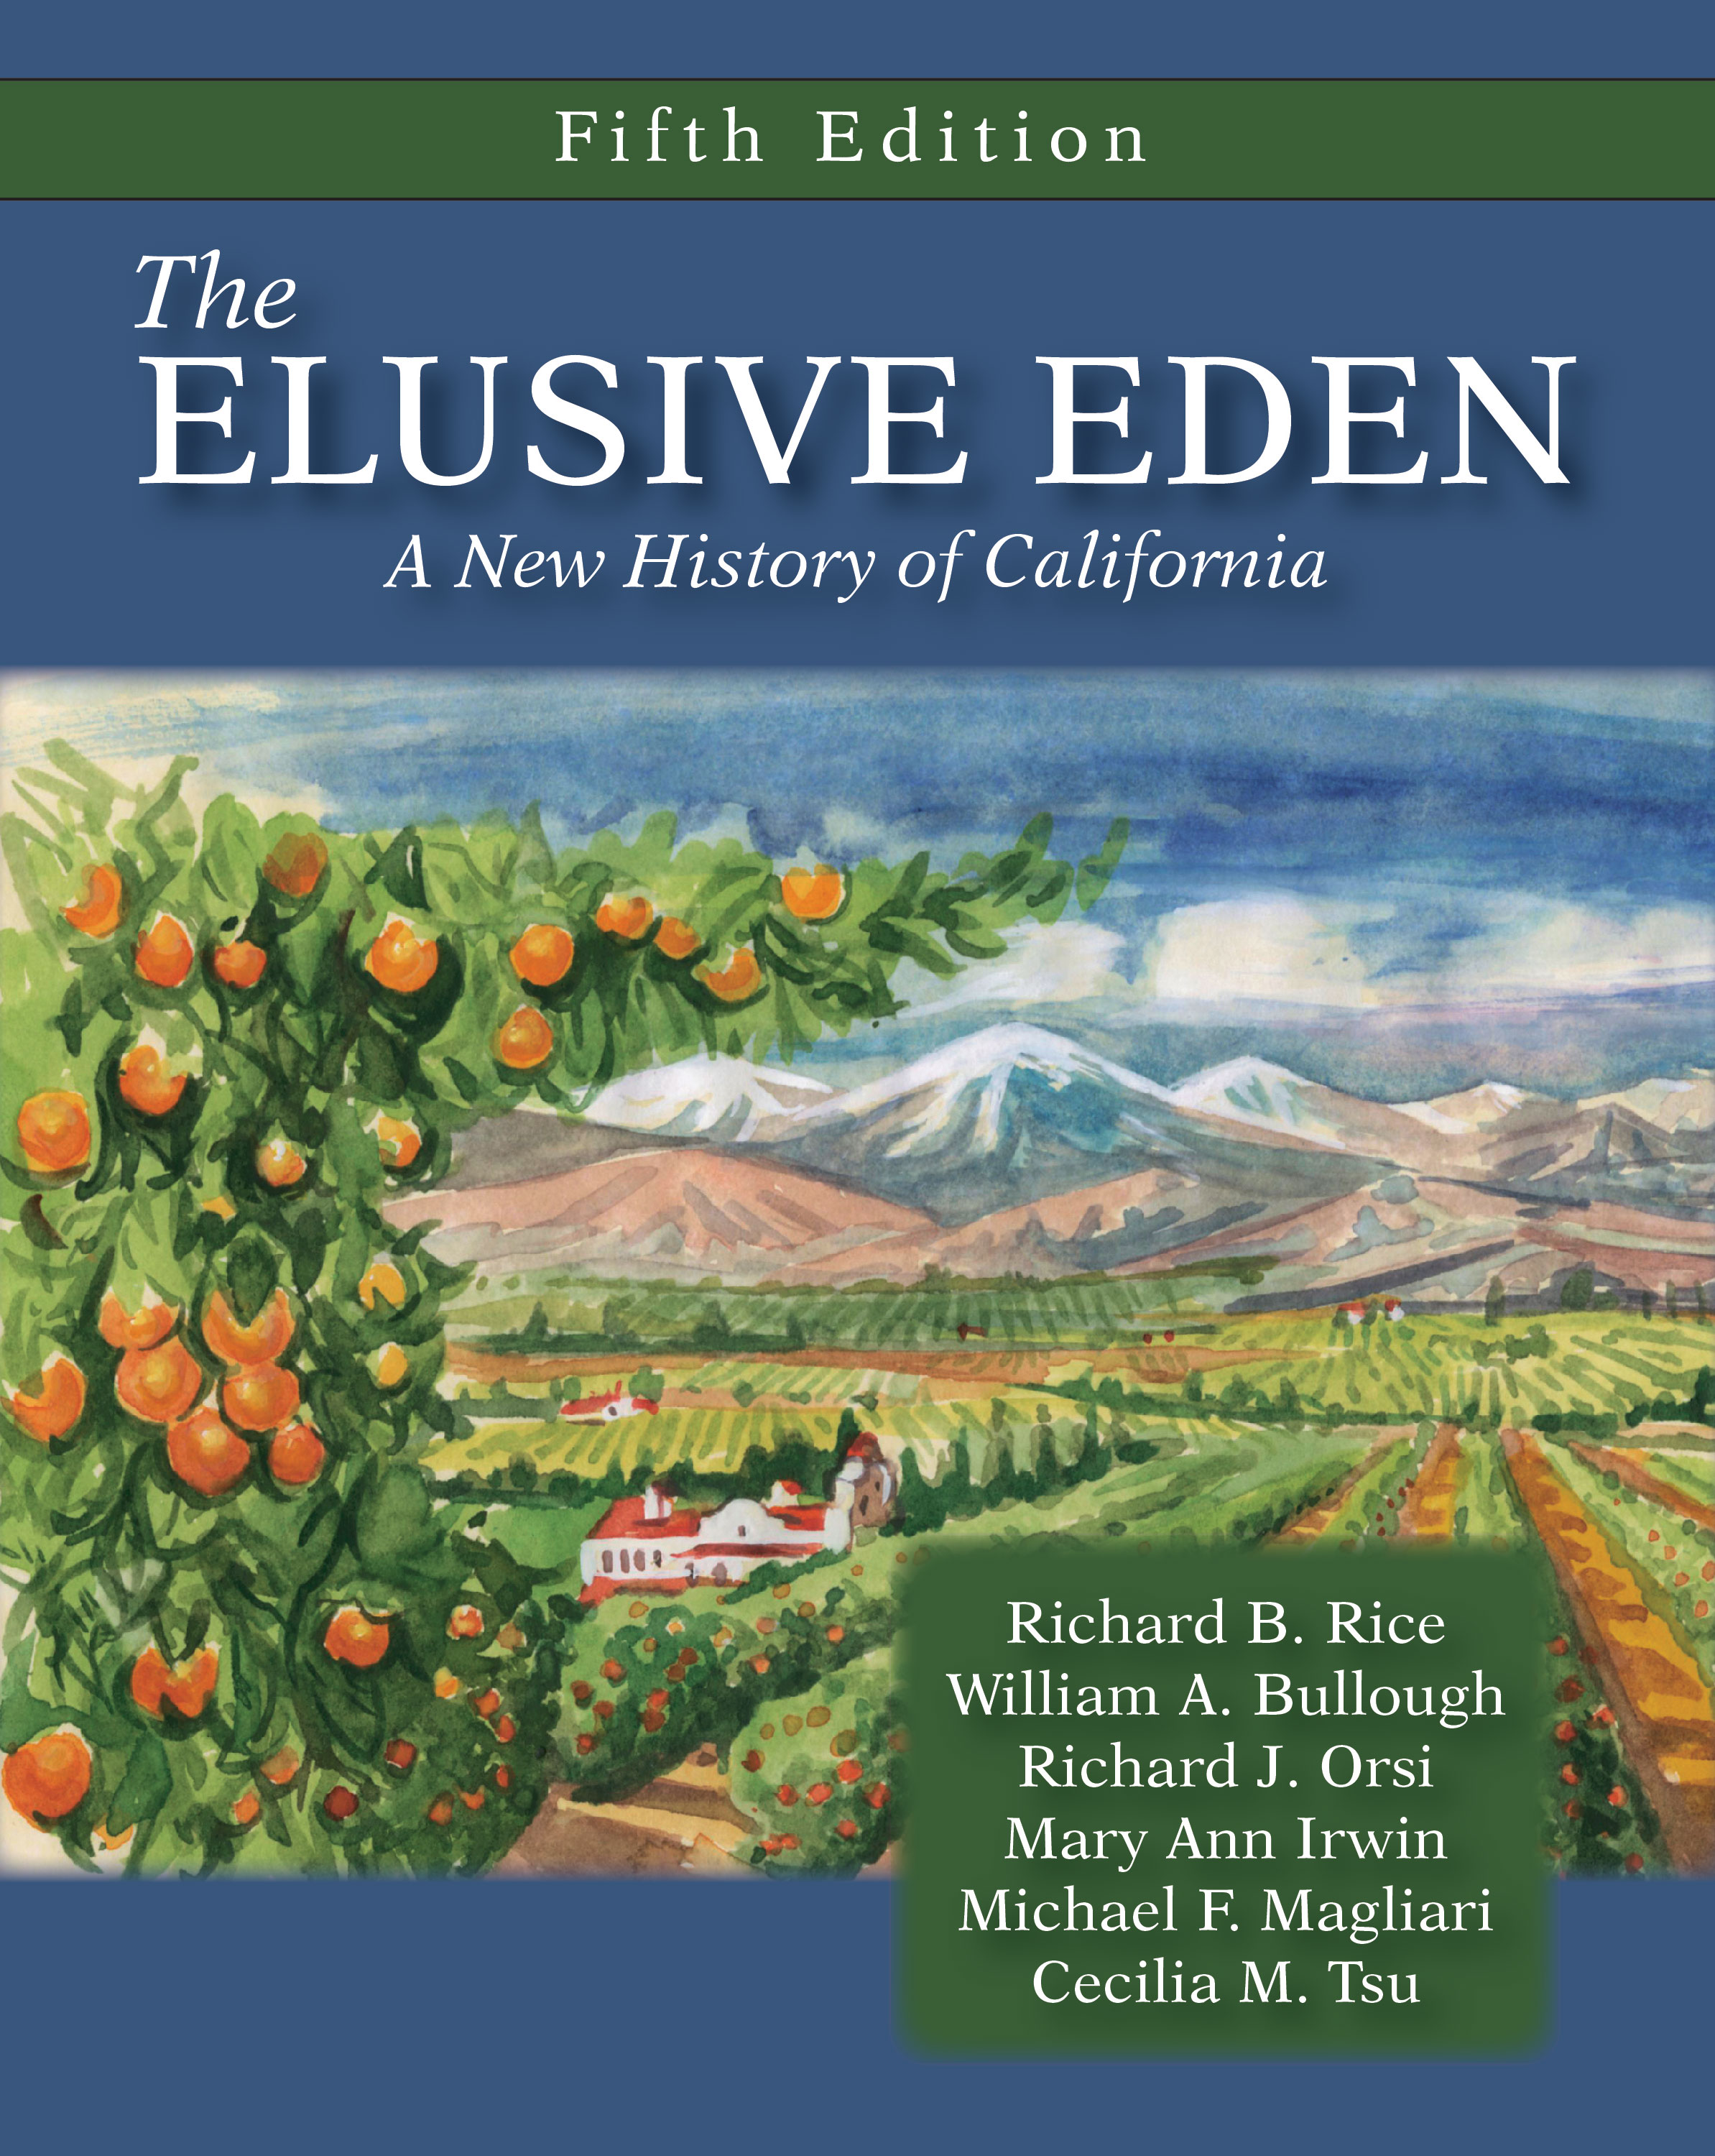 The Elusive Eden: A New History of California, Fifth Edition by Richard B. Rice, William A. Bullough, Richard J. Orsi, Mary Ann  Irwin, Michael F. Magliari, Cecilia M. Tsu